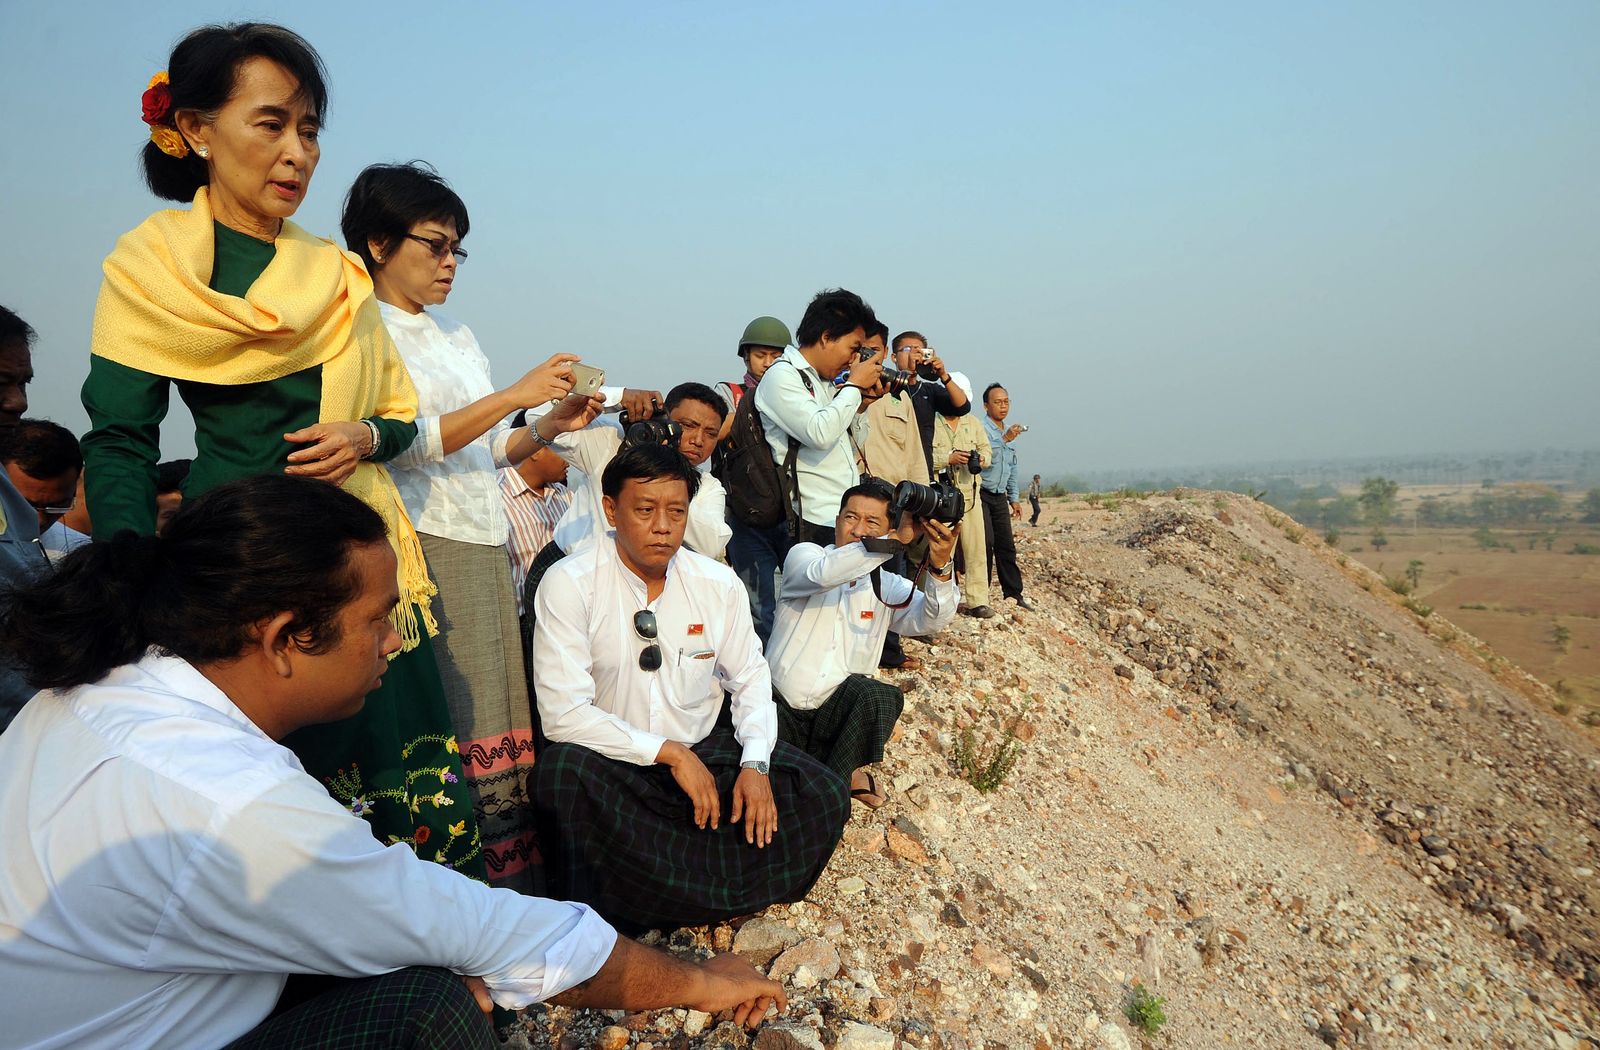 الزعيمة المدنية أونغ سان سو تشي تعاين منجم نحاس مدعوماً من الصين في مونيوا شمال ميانمار - 14 مارس 2013 - AFP